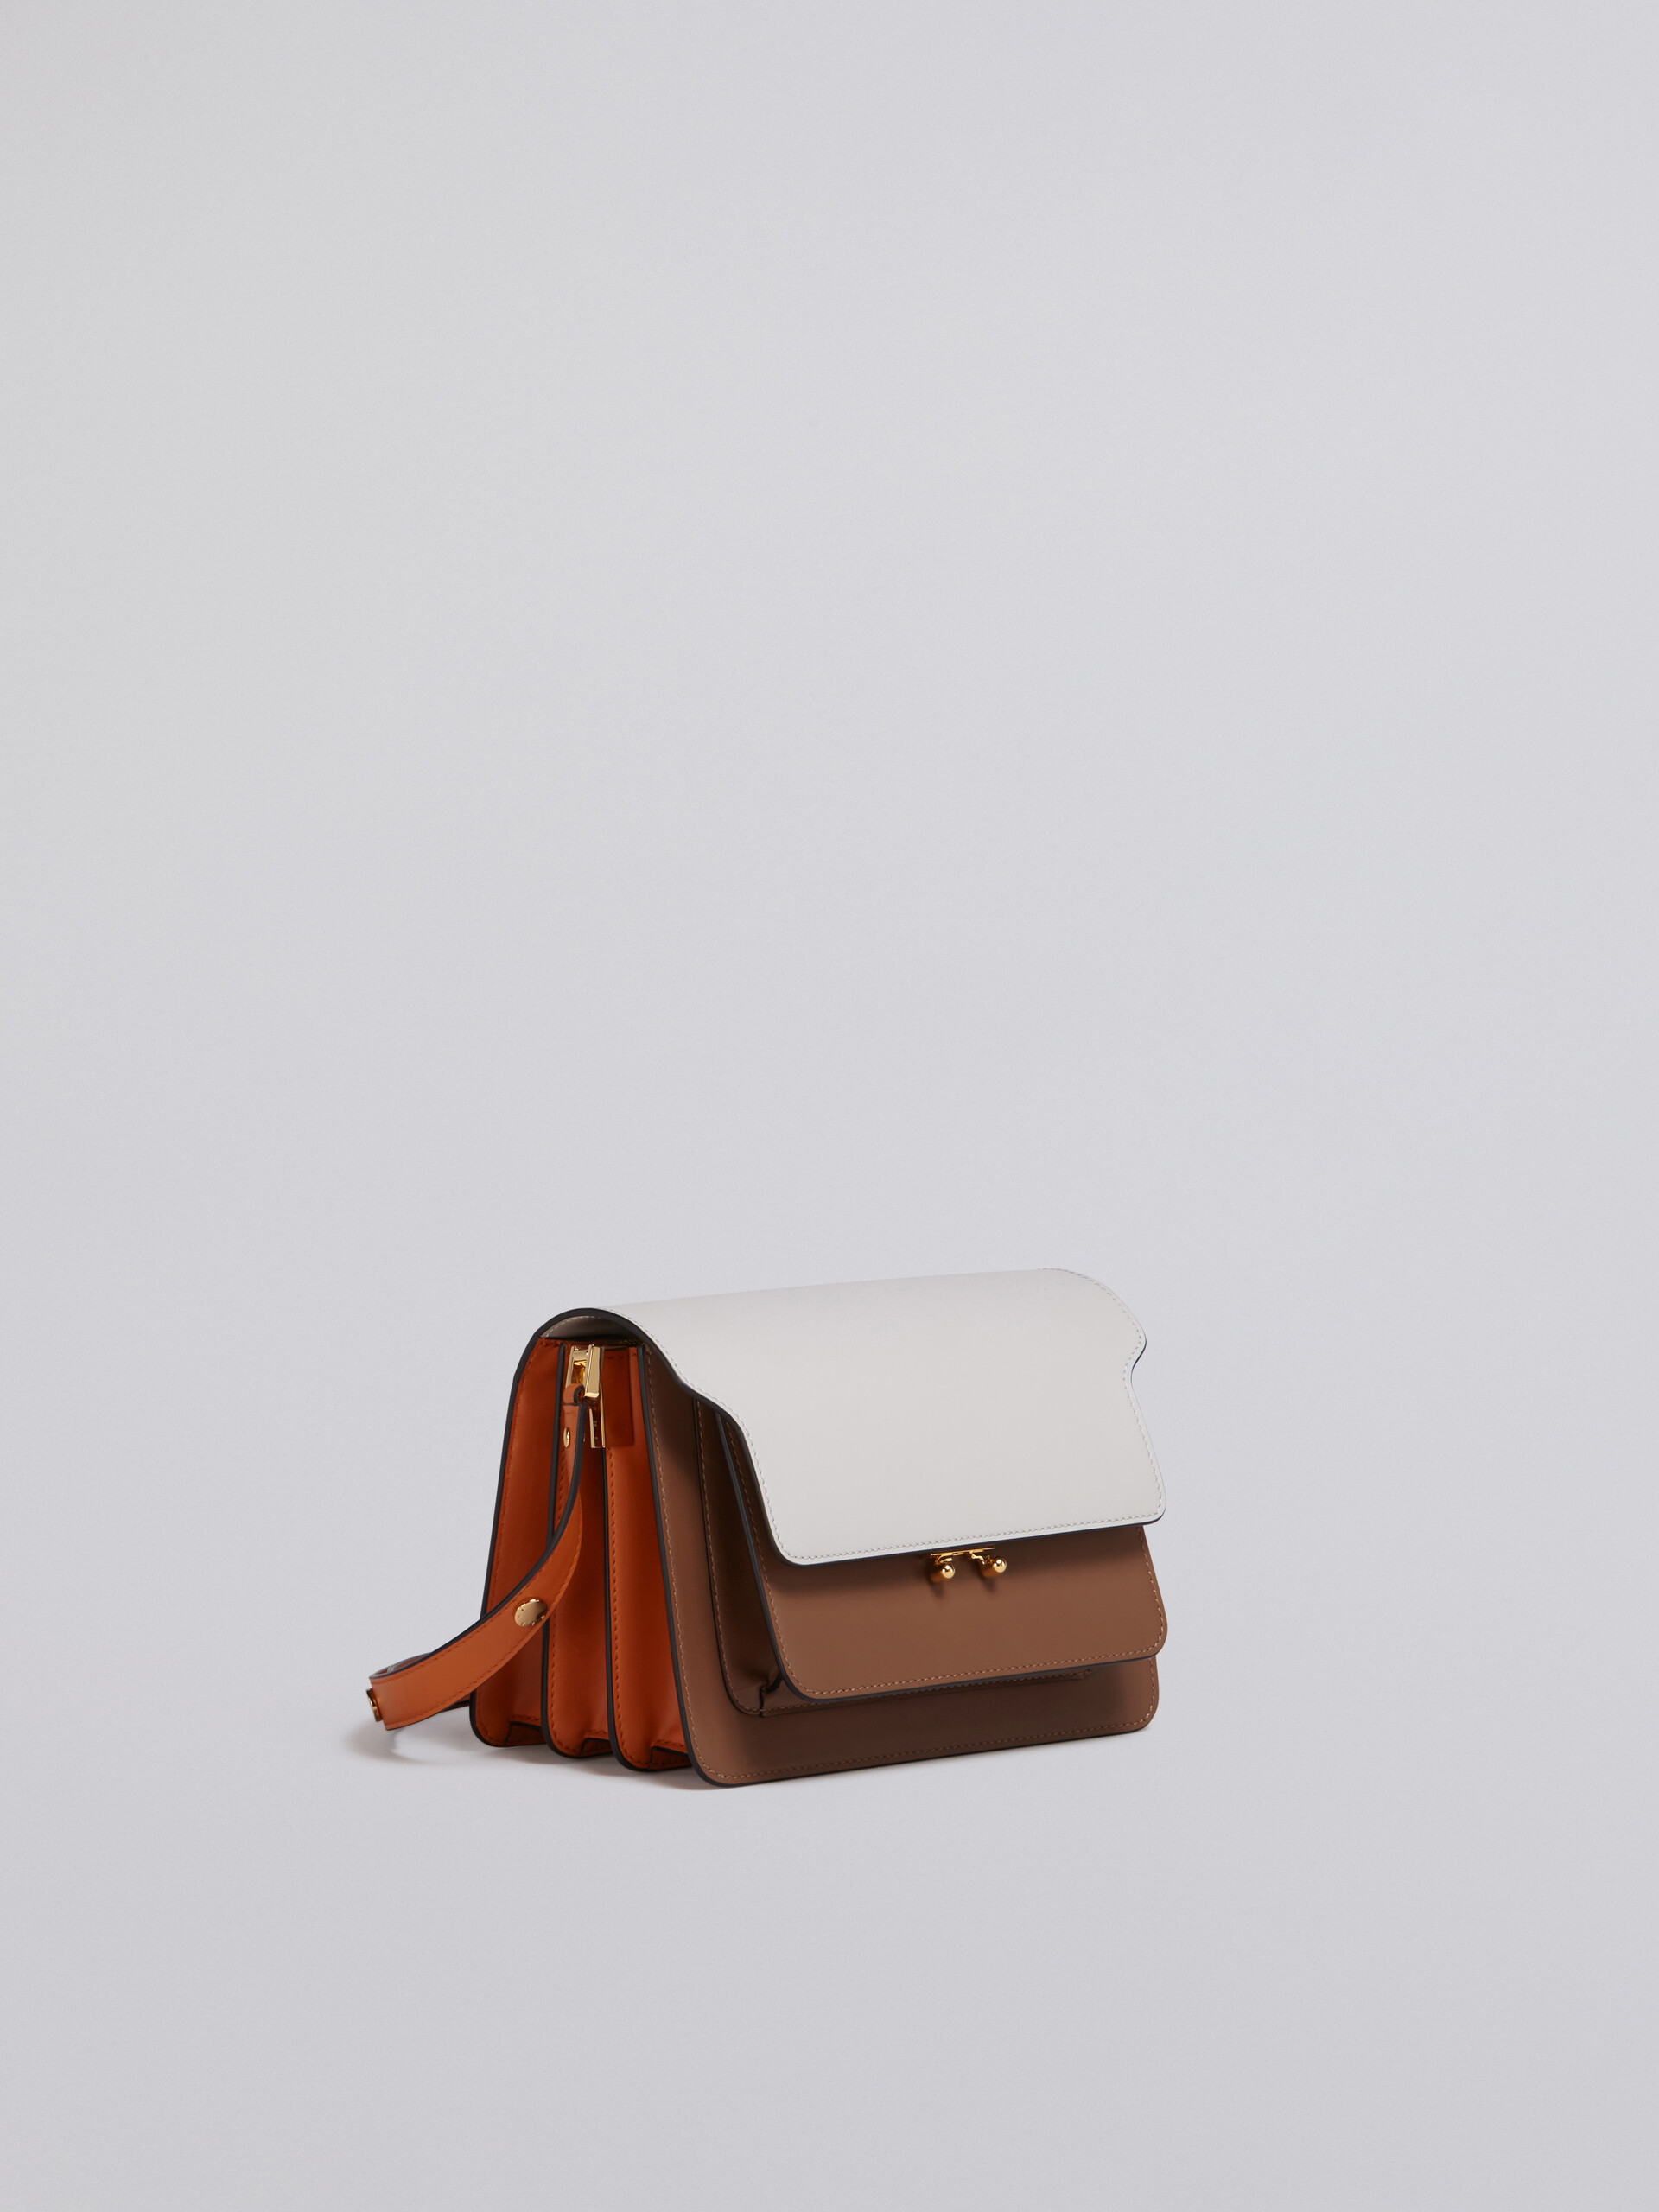 TRUNK bag in vitello liscio bianco marrone e arancione - Borse a spalla - Image 4